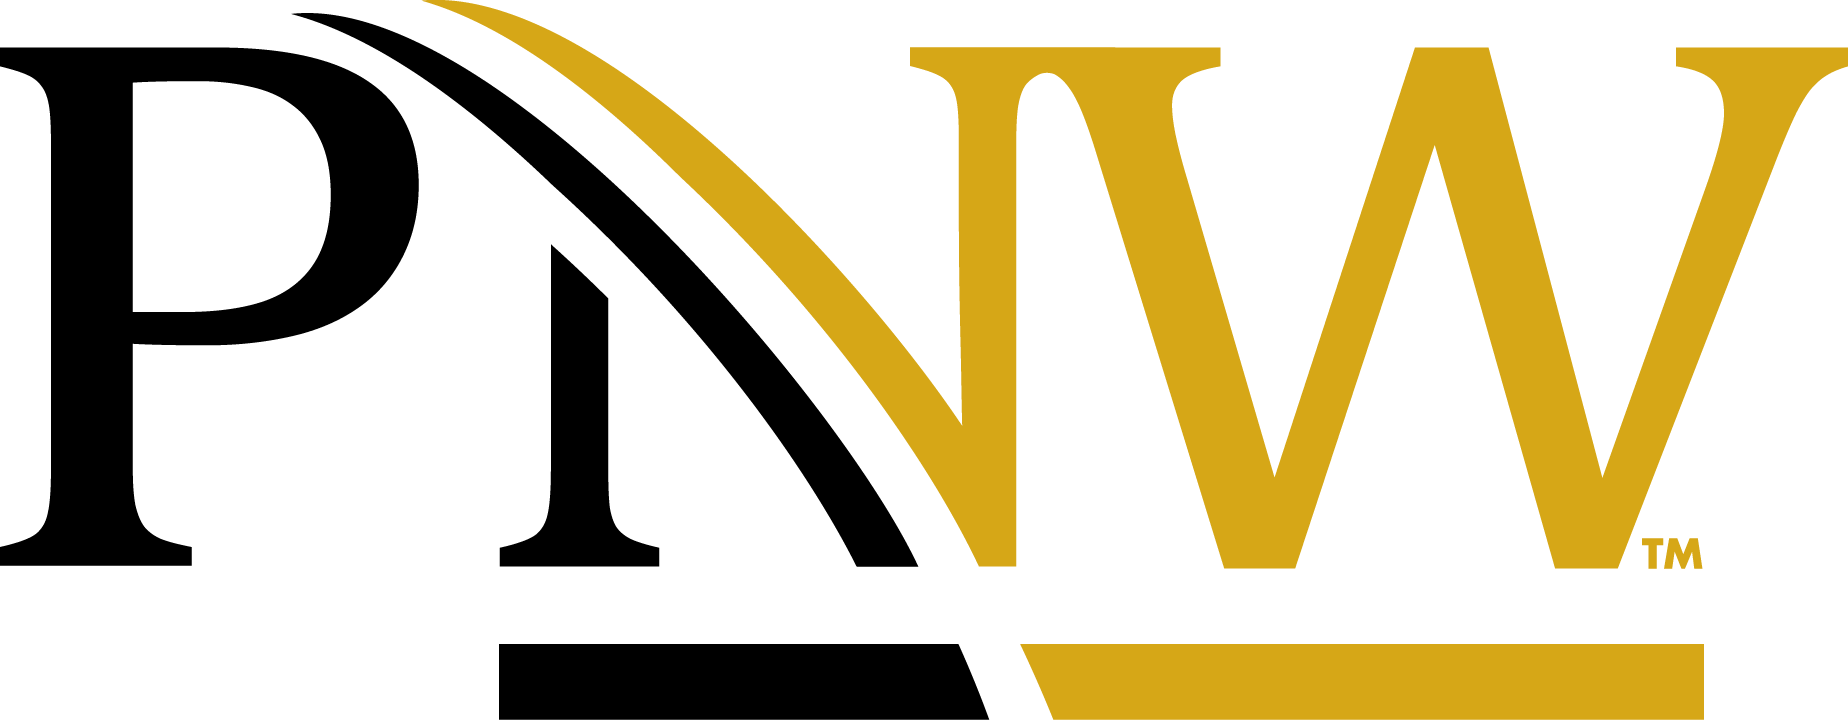 PNW Logo - Download PNW Logos – Marketing & Communications